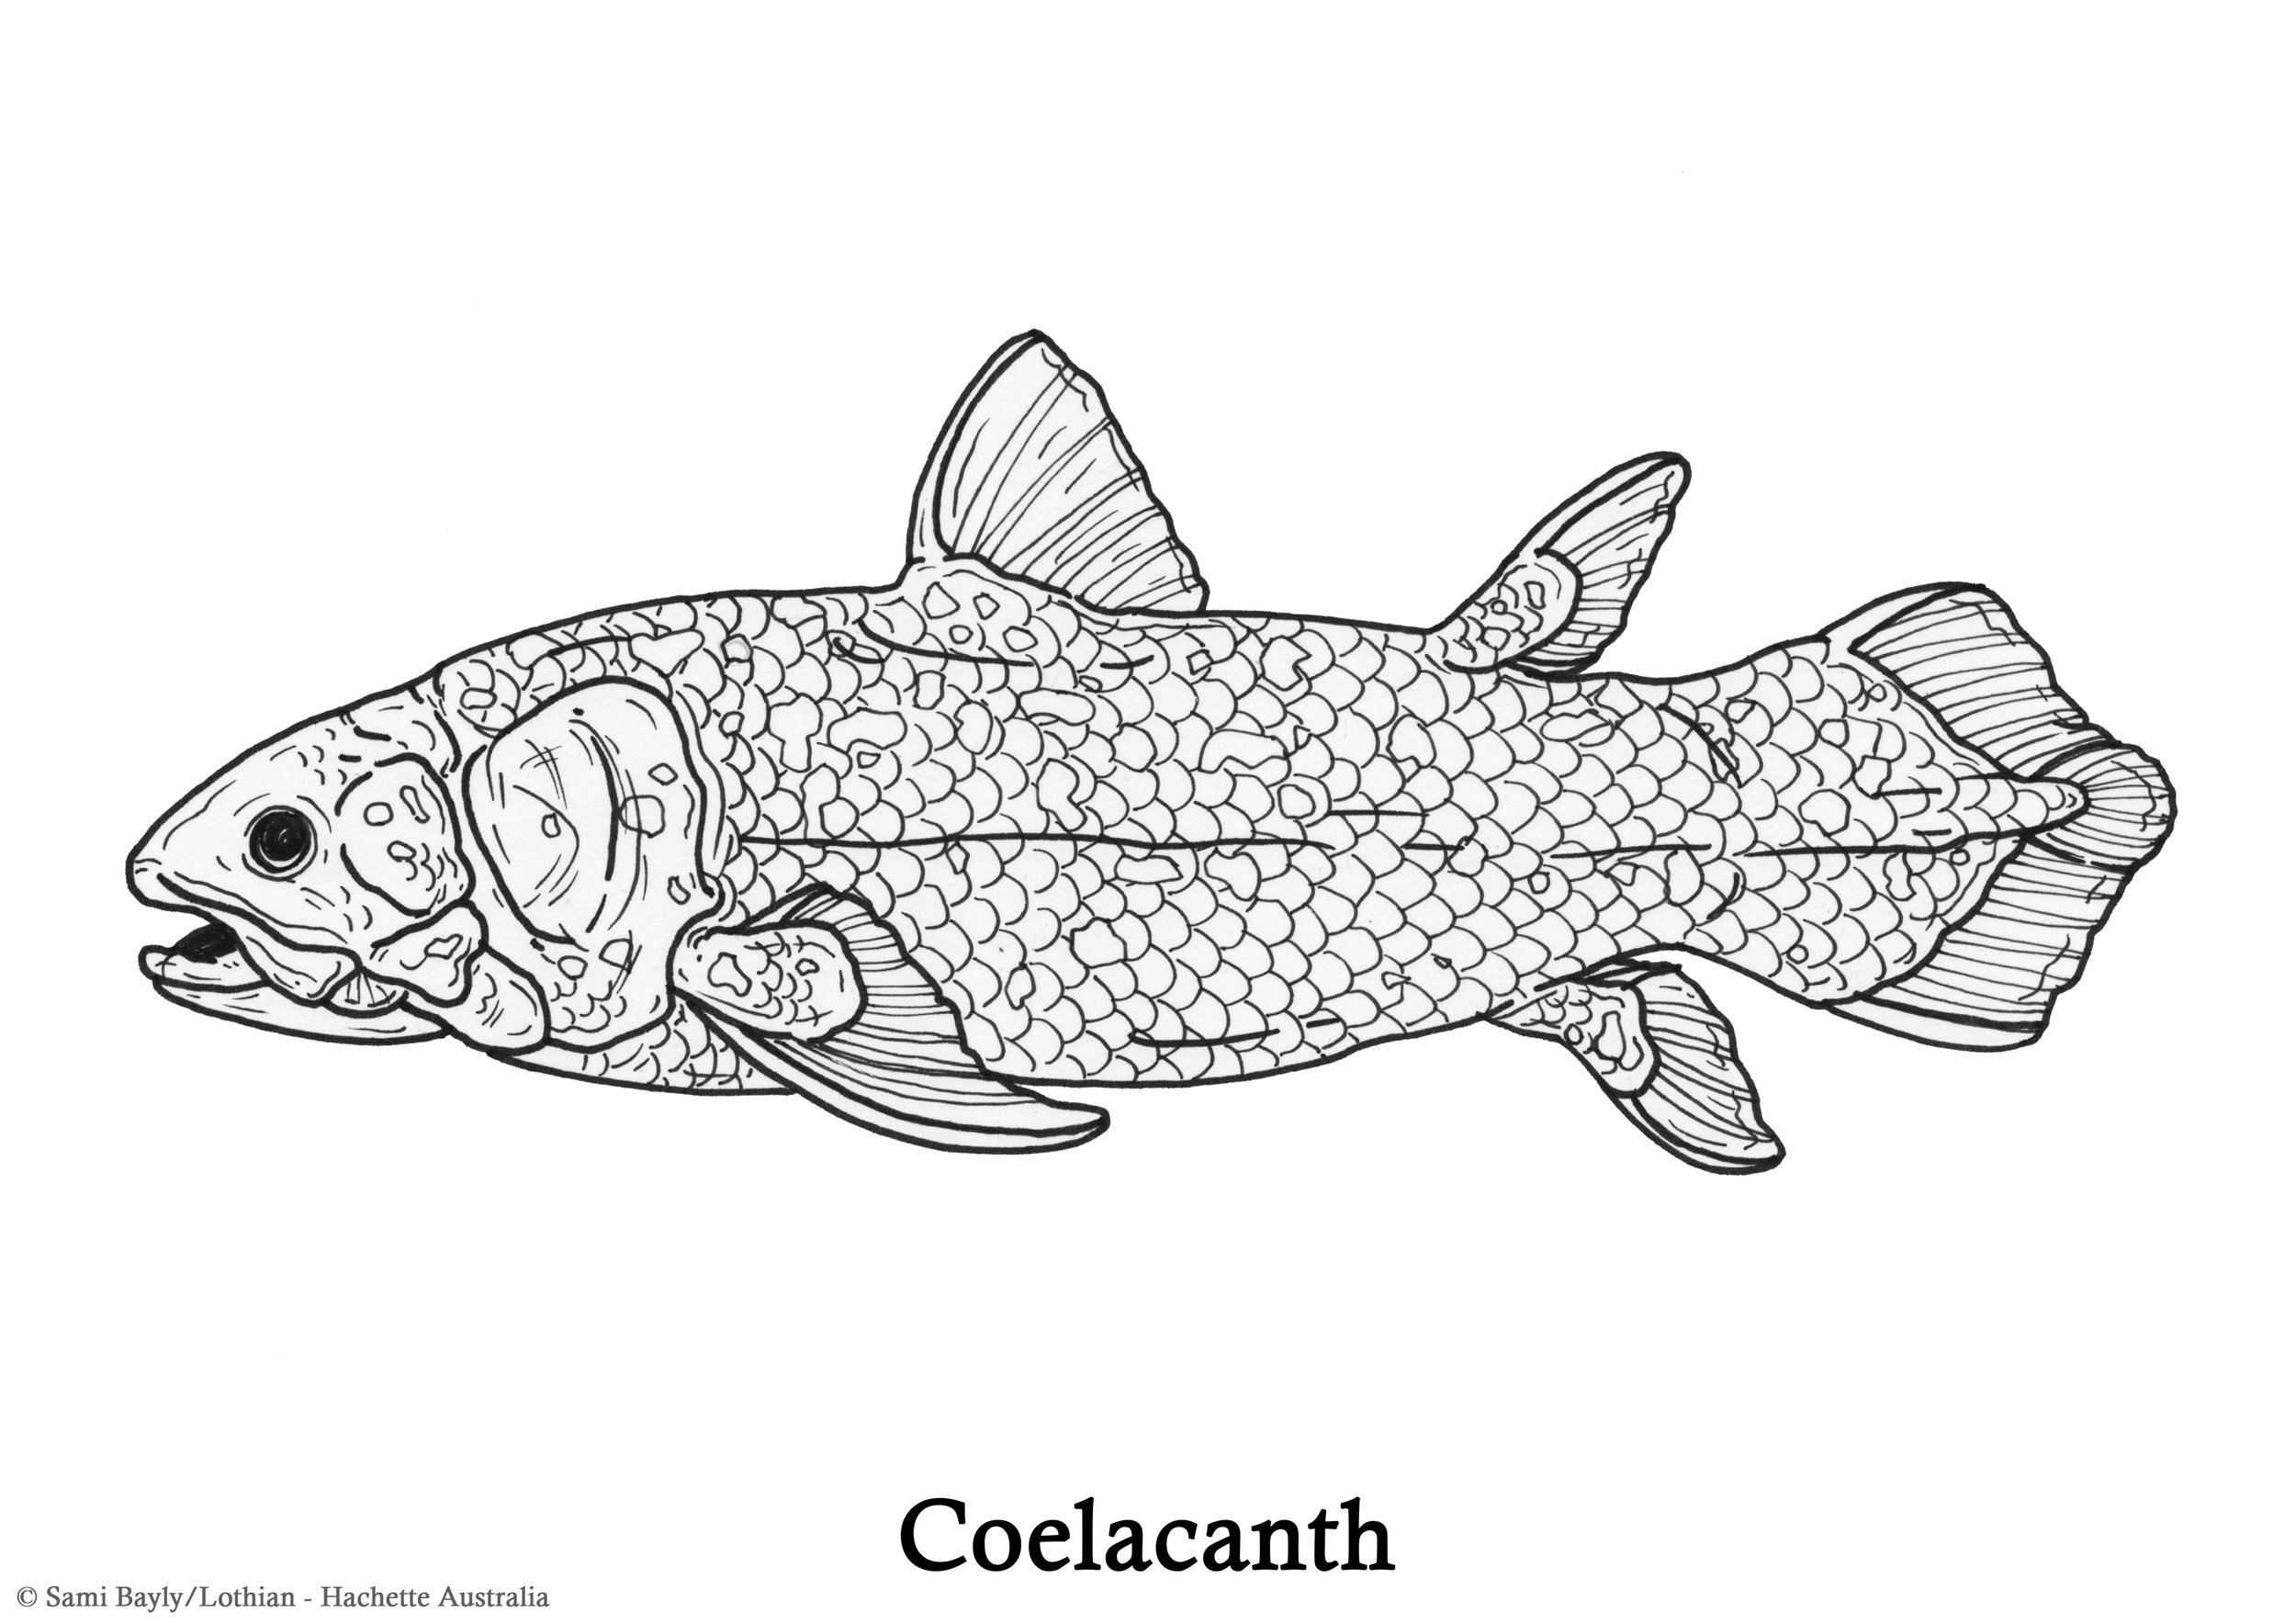 Coelacanth Line Drawing.jpg